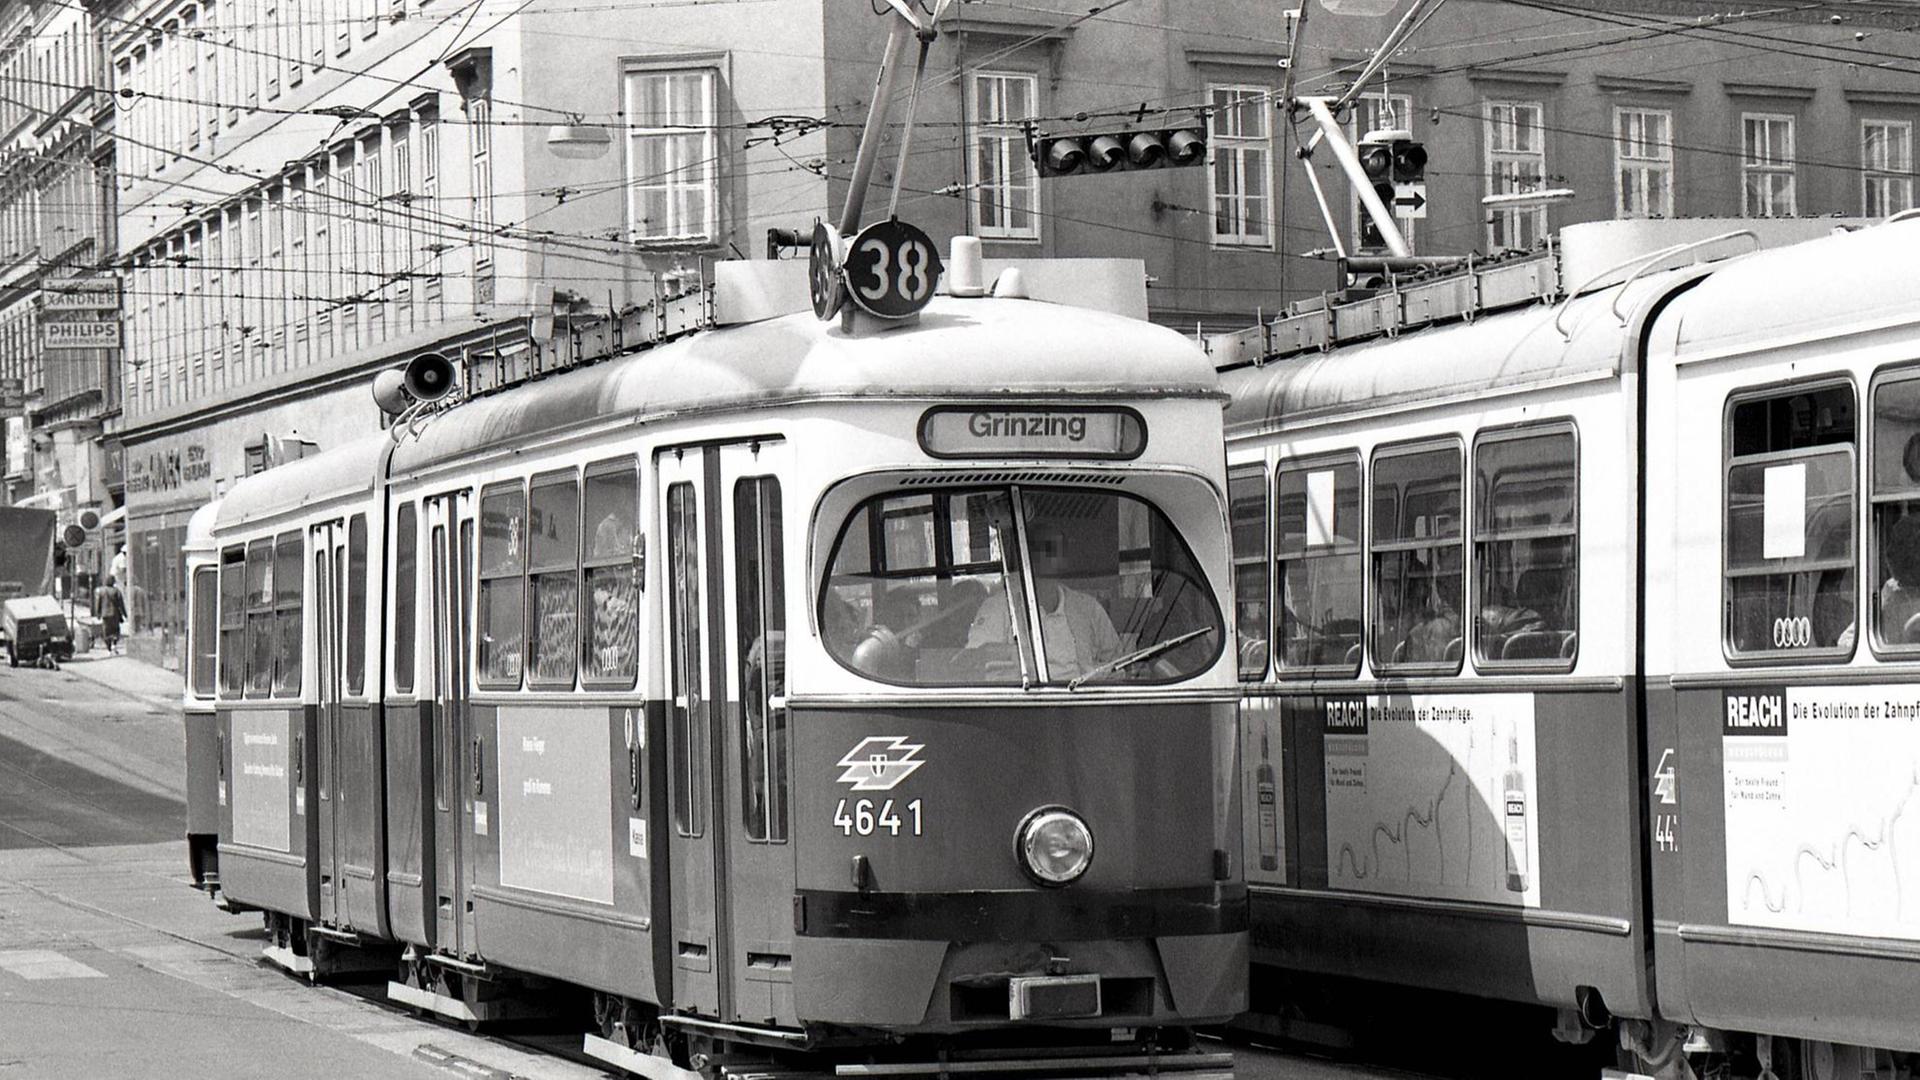 Straßenbahnlinie 38 in Wien, Archivbild Juli 1993 *** Tram line 38 in Vienna archive image July 1993 PUBLICATIONxINxGERxSUIxAUTxHUNxONLY 1065511500